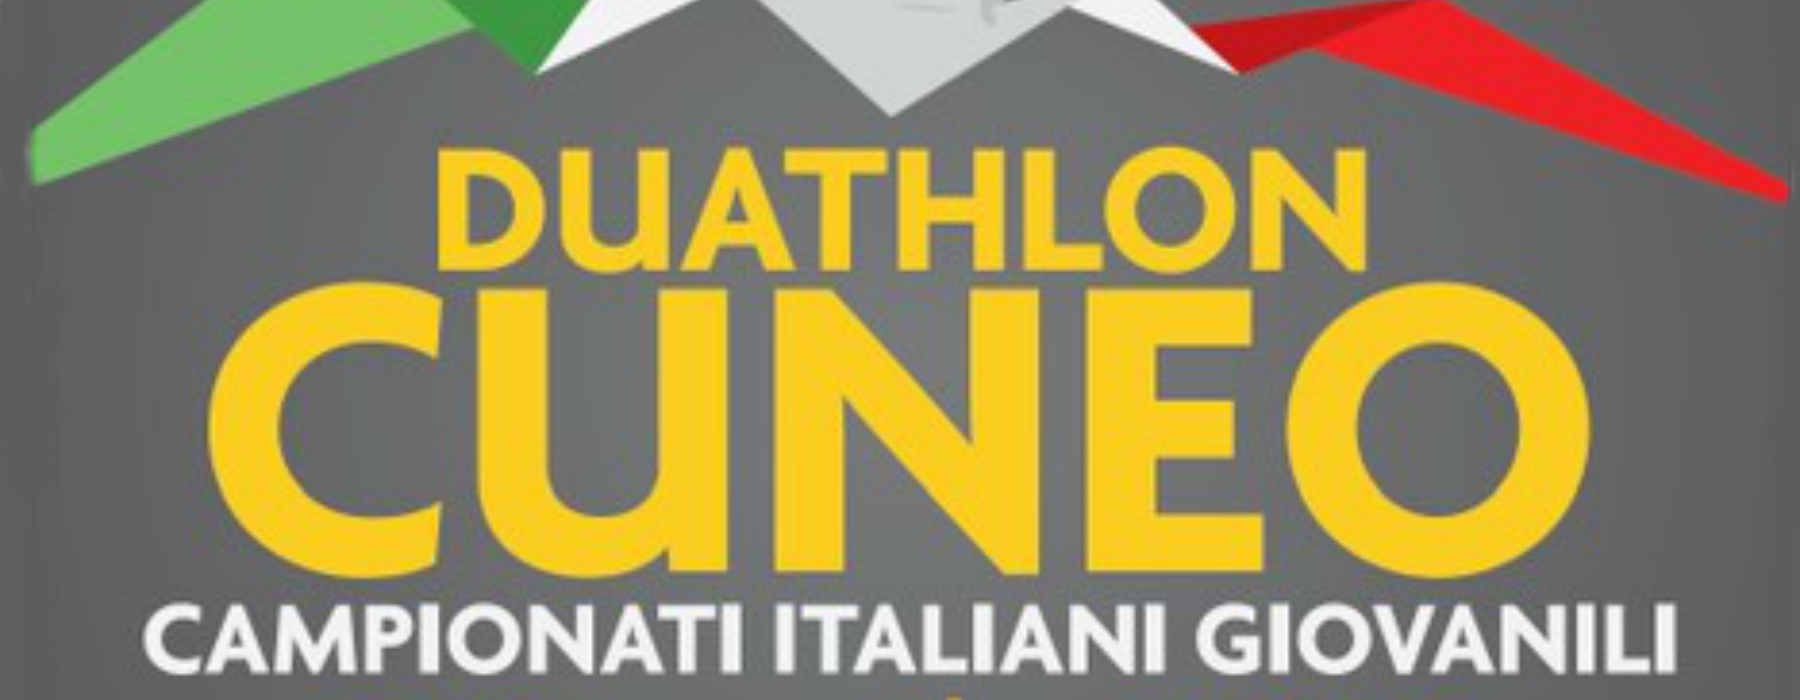 Campionato Italiano Duathlon Giovani Cuneo